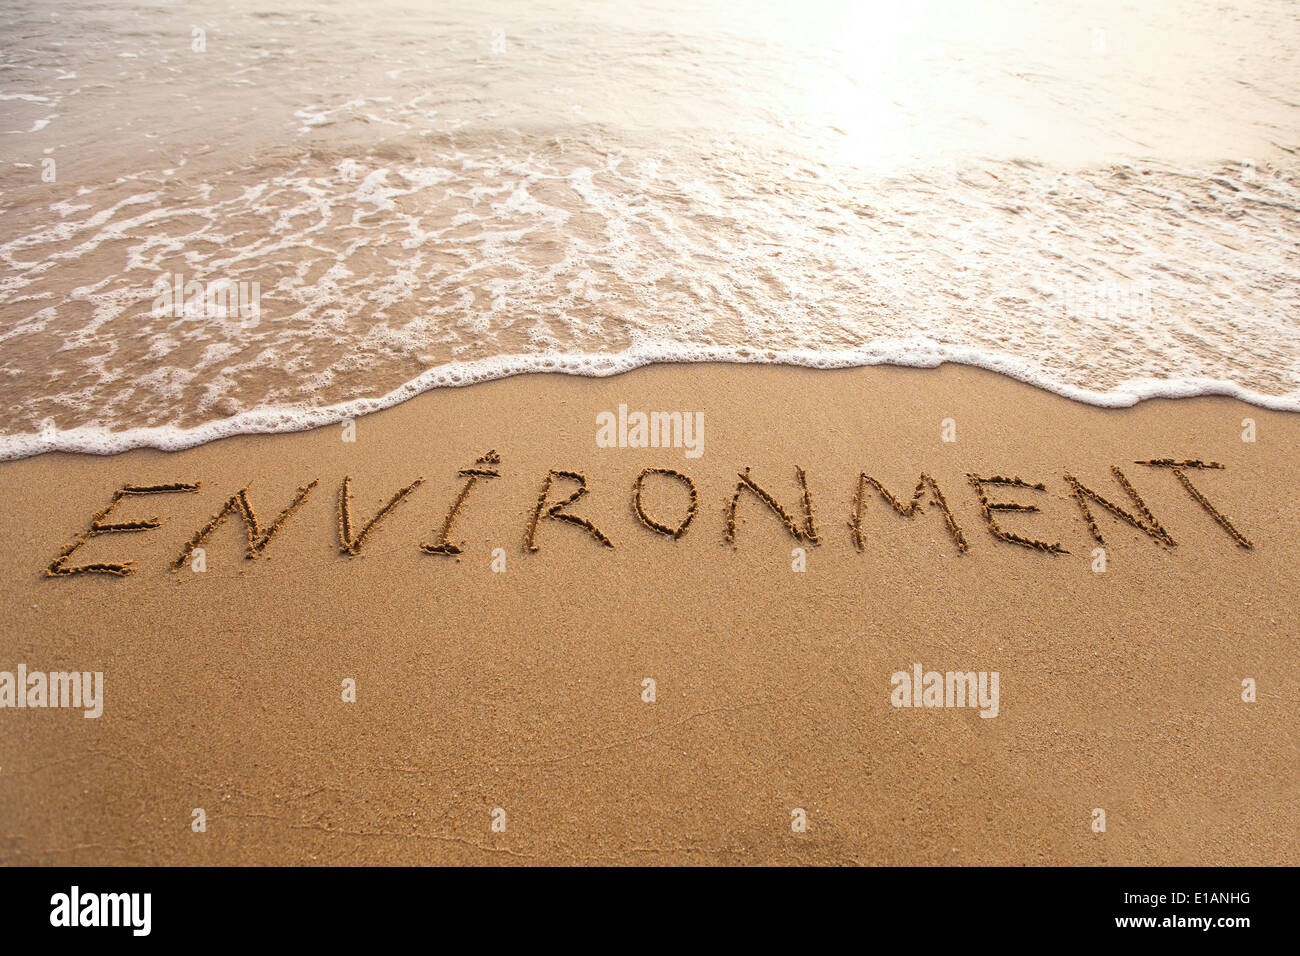 environment concept Stock Photo